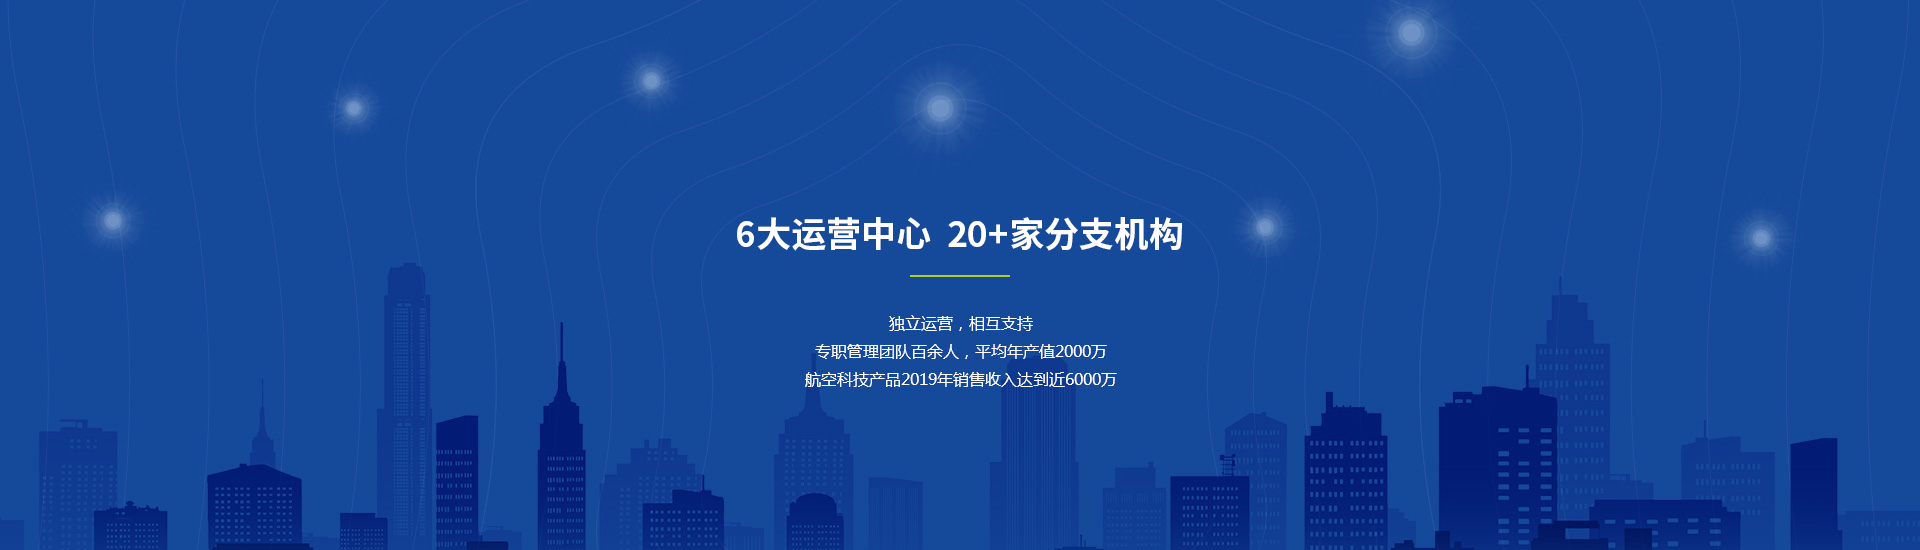 nba(中国)官方网站产品营销展示中心